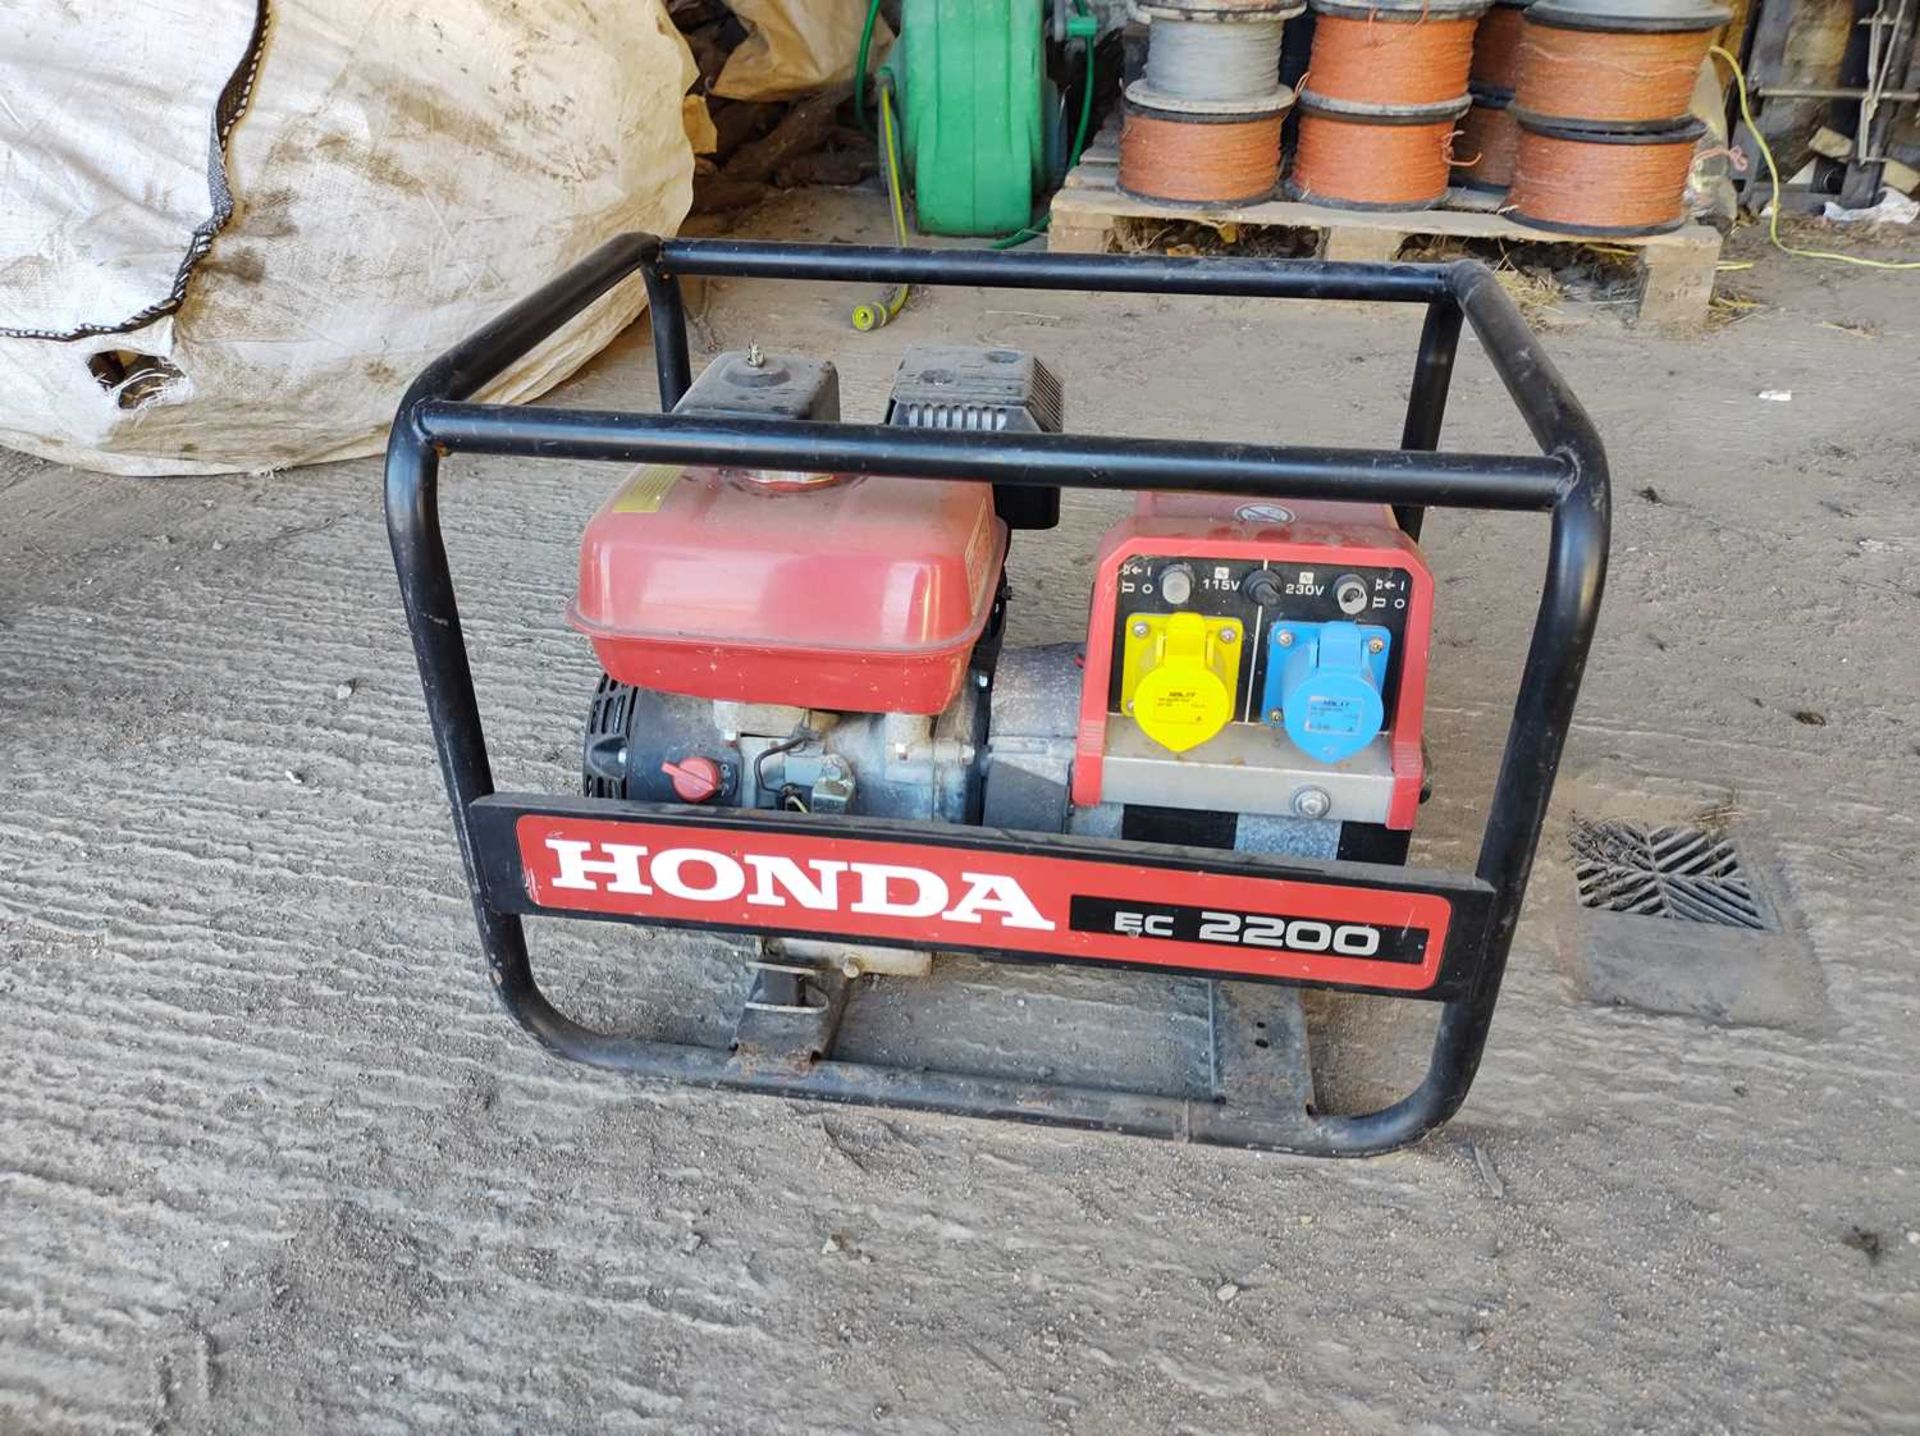 Honda EC 2200 Generator